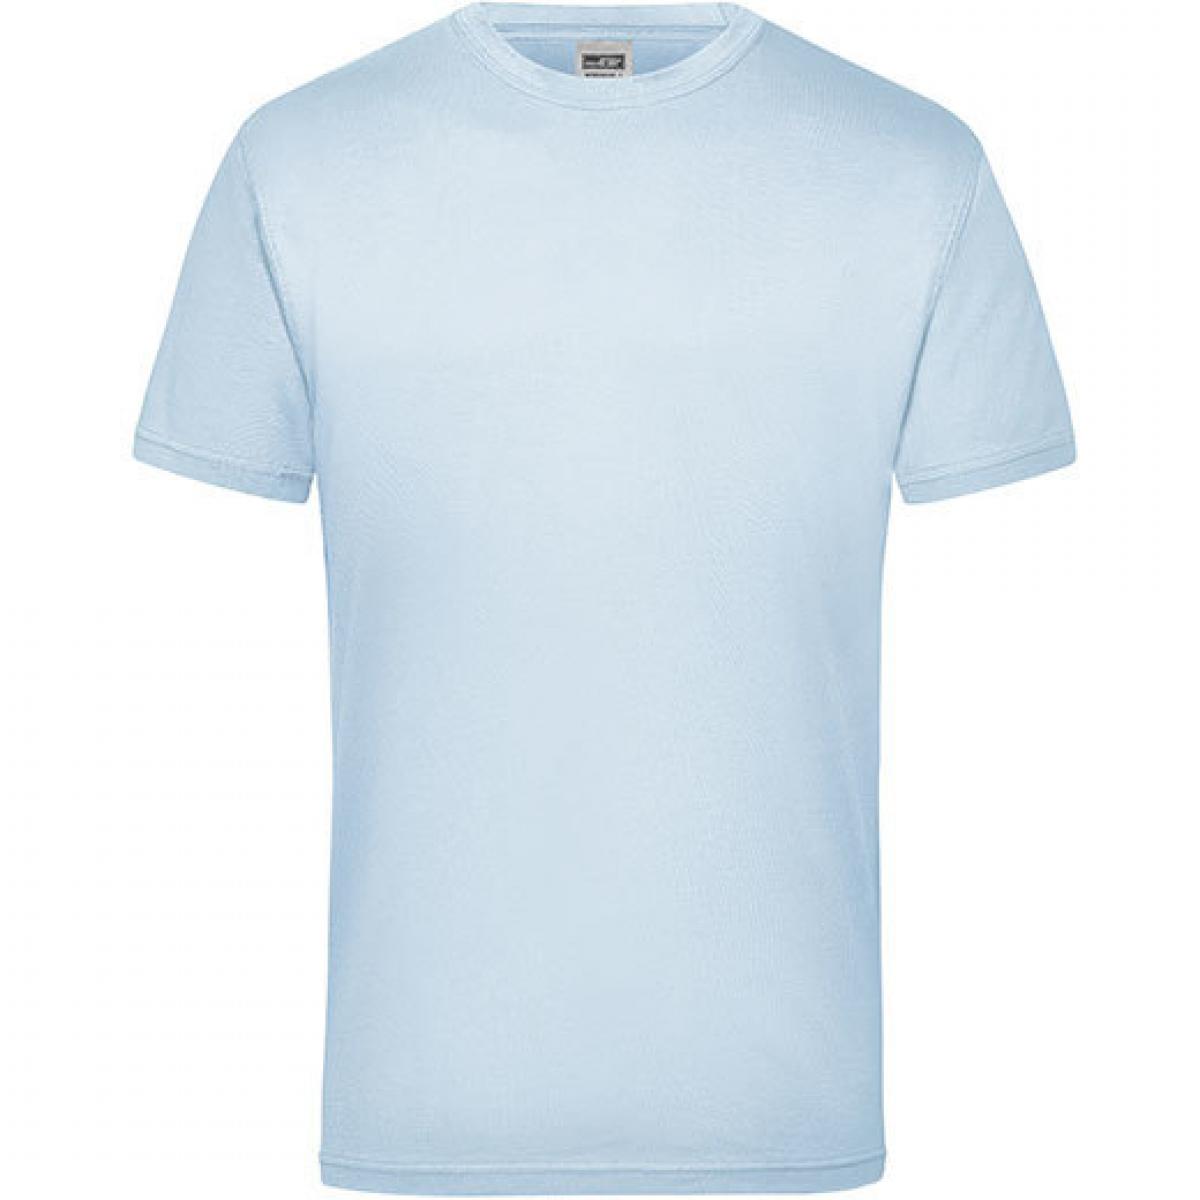 Hersteller: James+Nicholson Herstellernummer: JN 800 Artikelbezeichnung: Workwear Herren T-Shirt - waschbar bis 60 °C Farbe: Light Blue